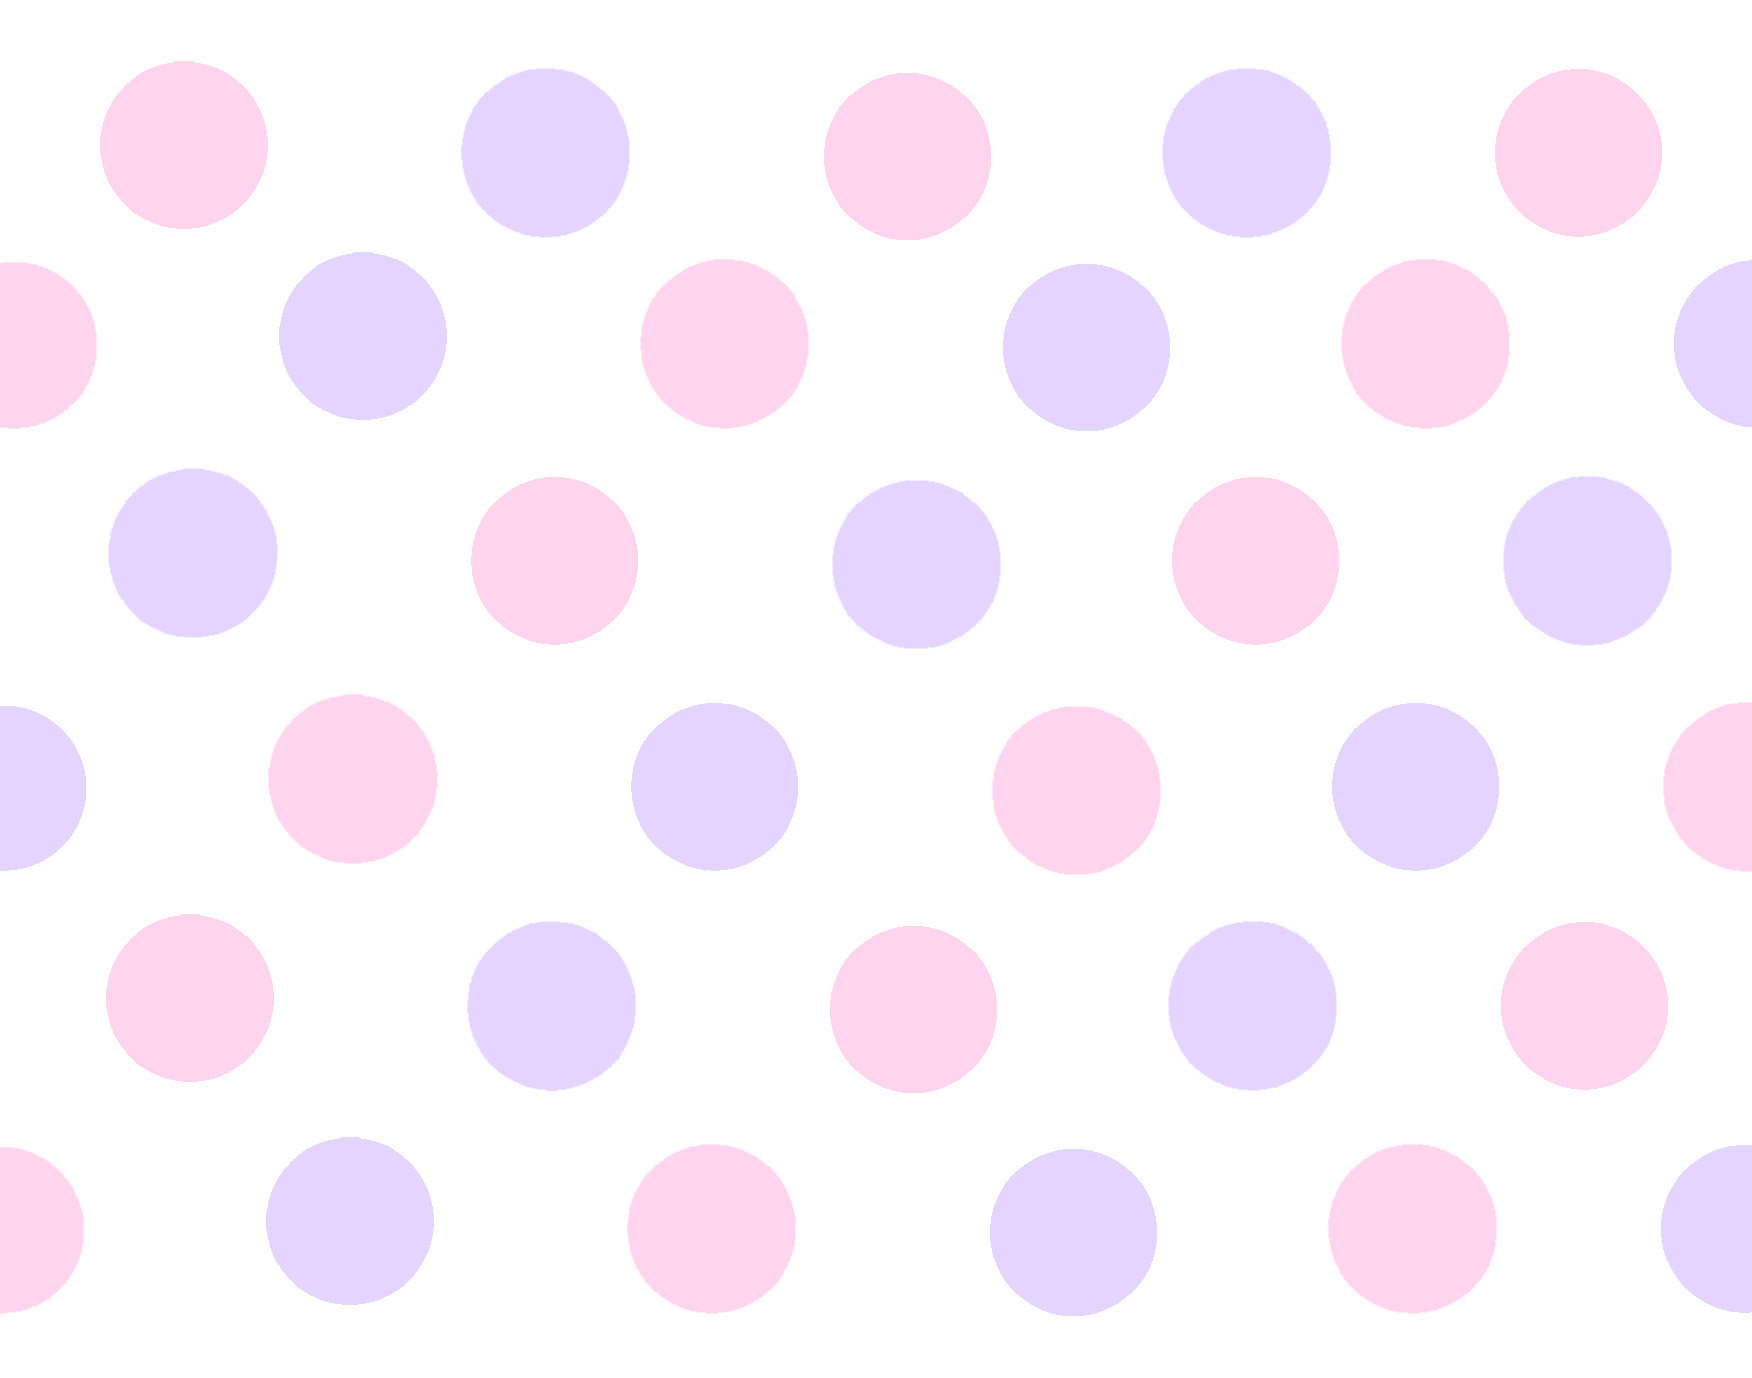 20+ Cool Polka Dot Wallpapers